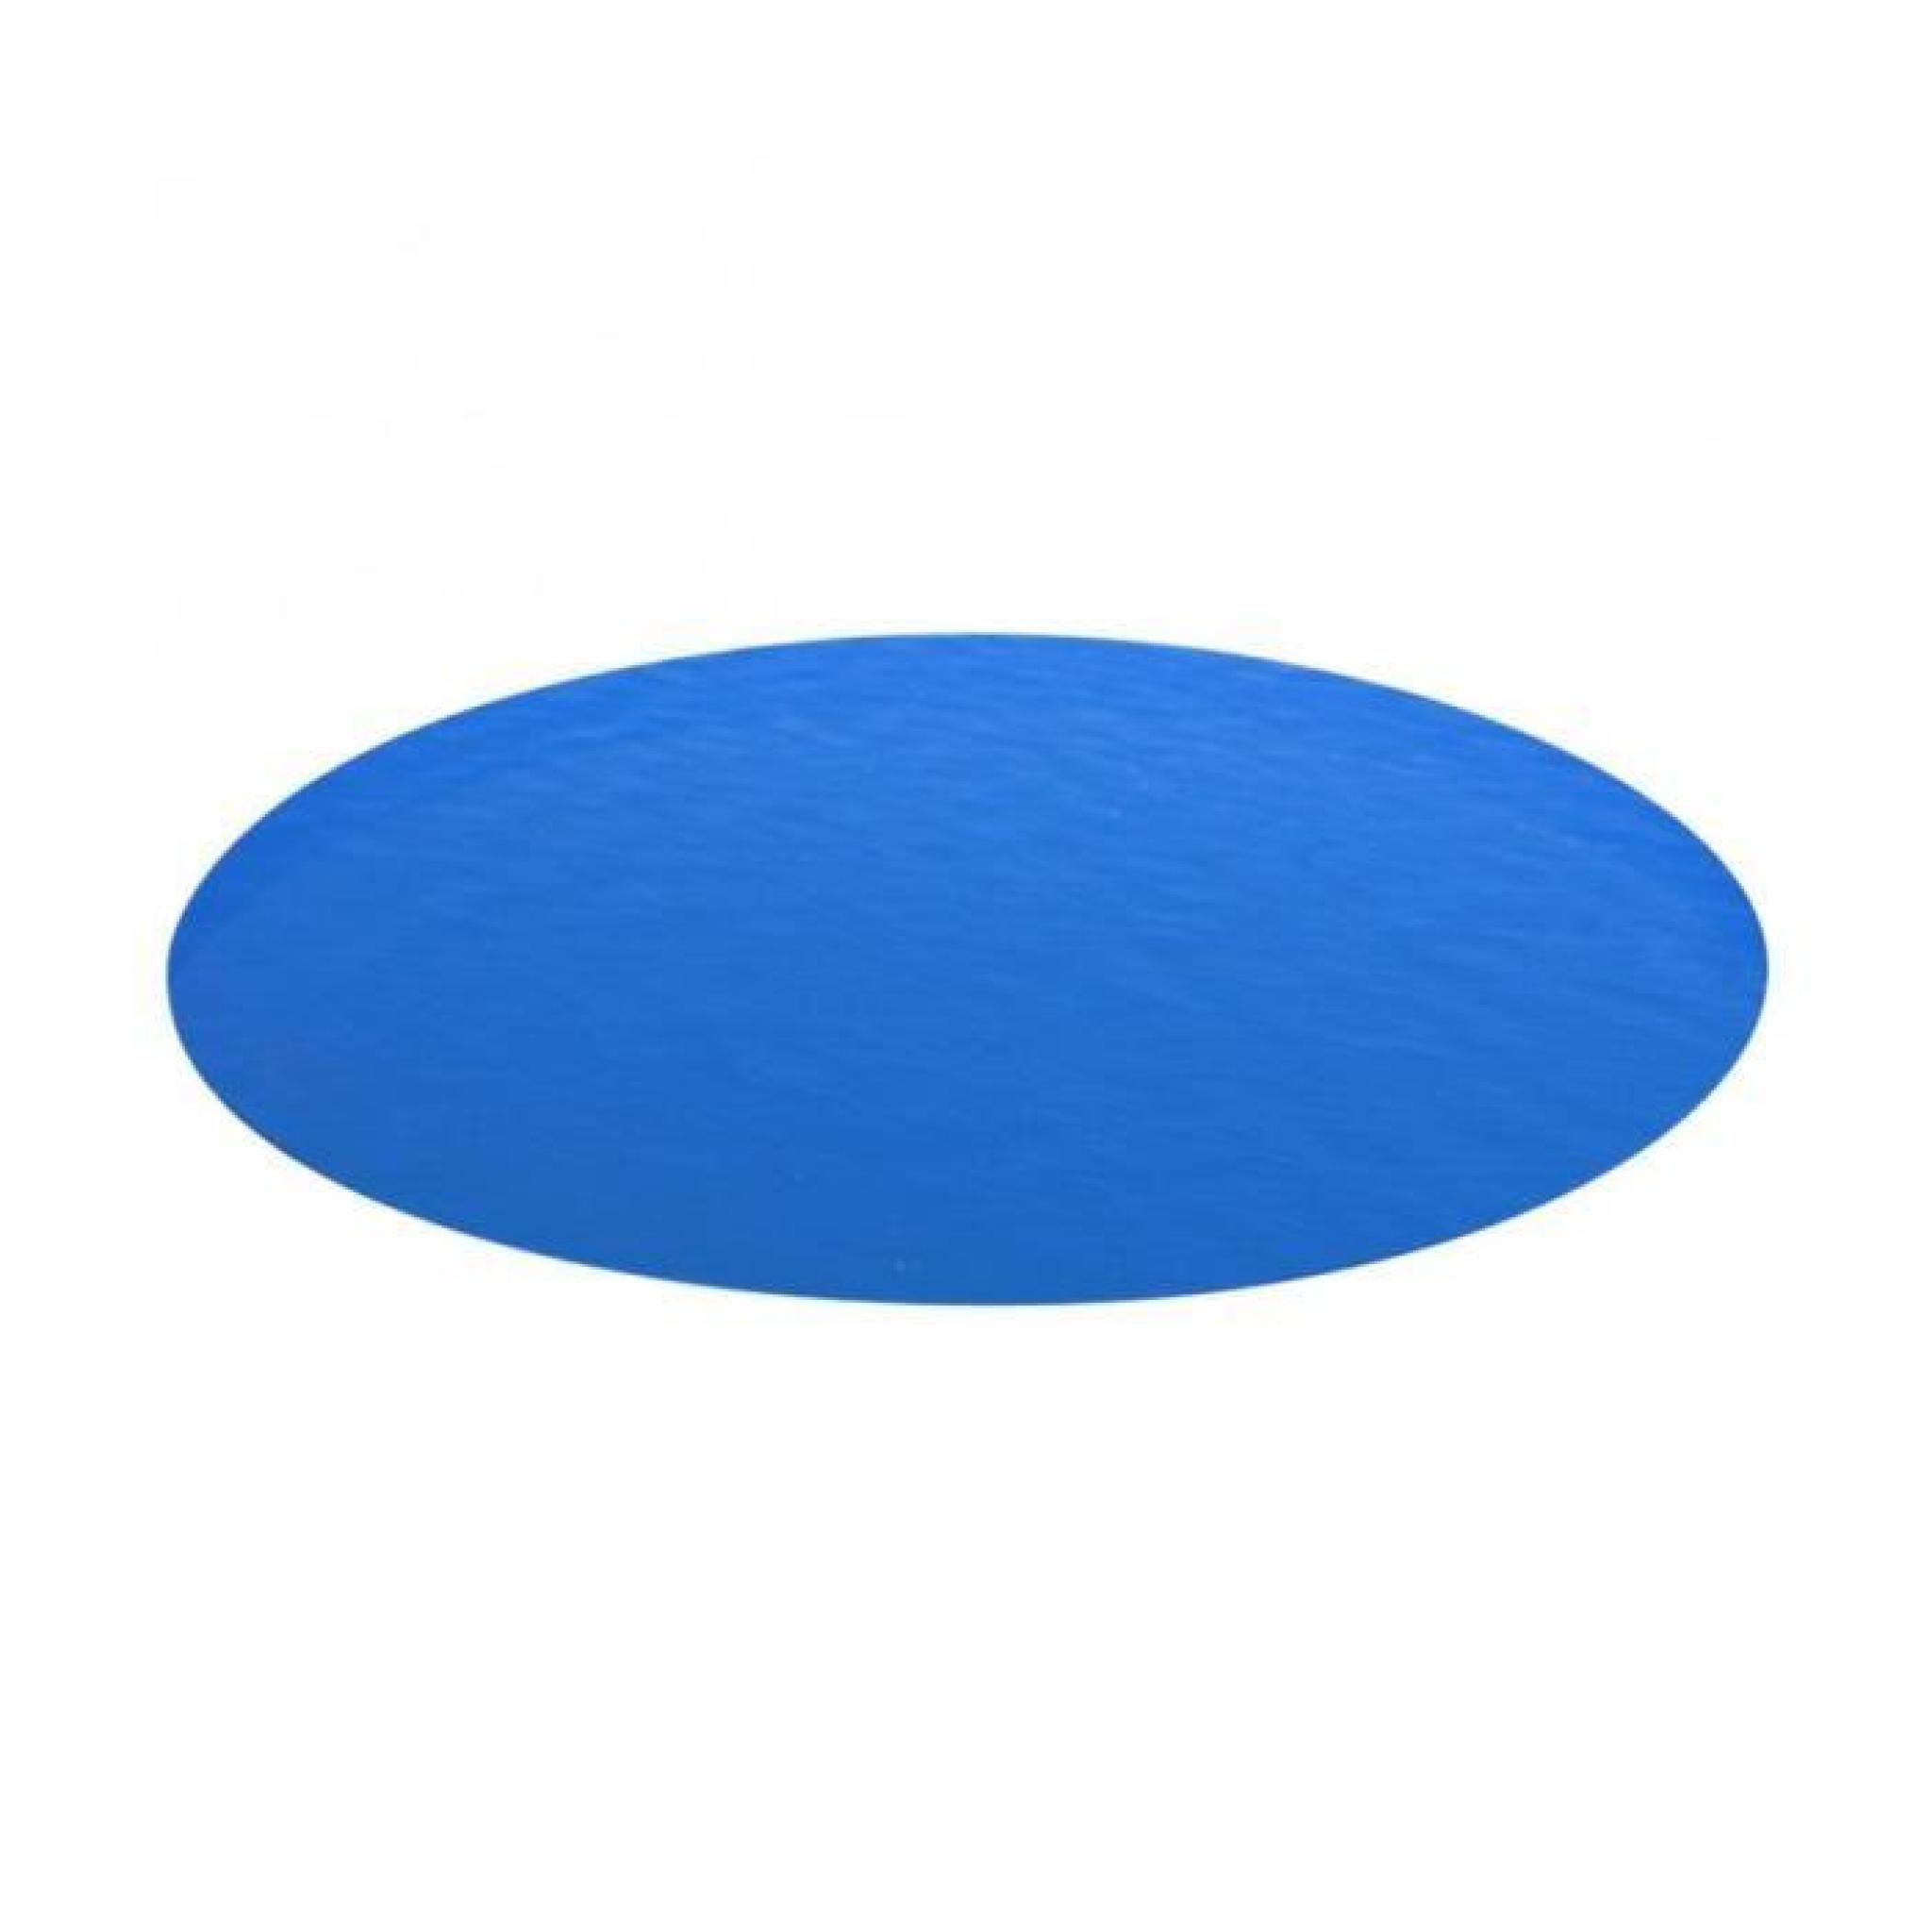 Superbe Bâche de piscine bleue ronde en PE 549 cm 